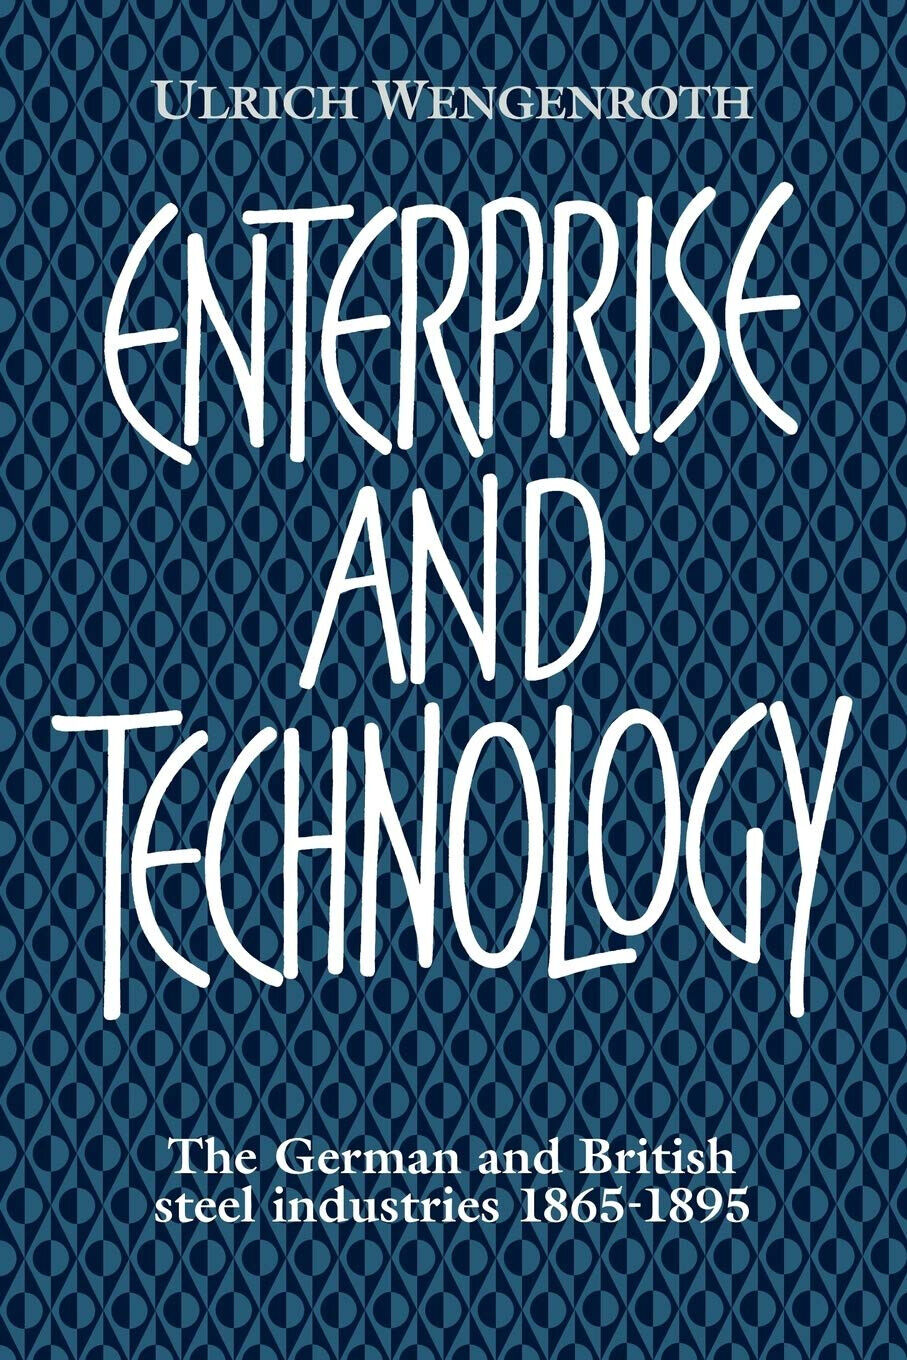 Enterprise and Technology - Ulrich Wengenroth - Cambridge, 2022 libro usato